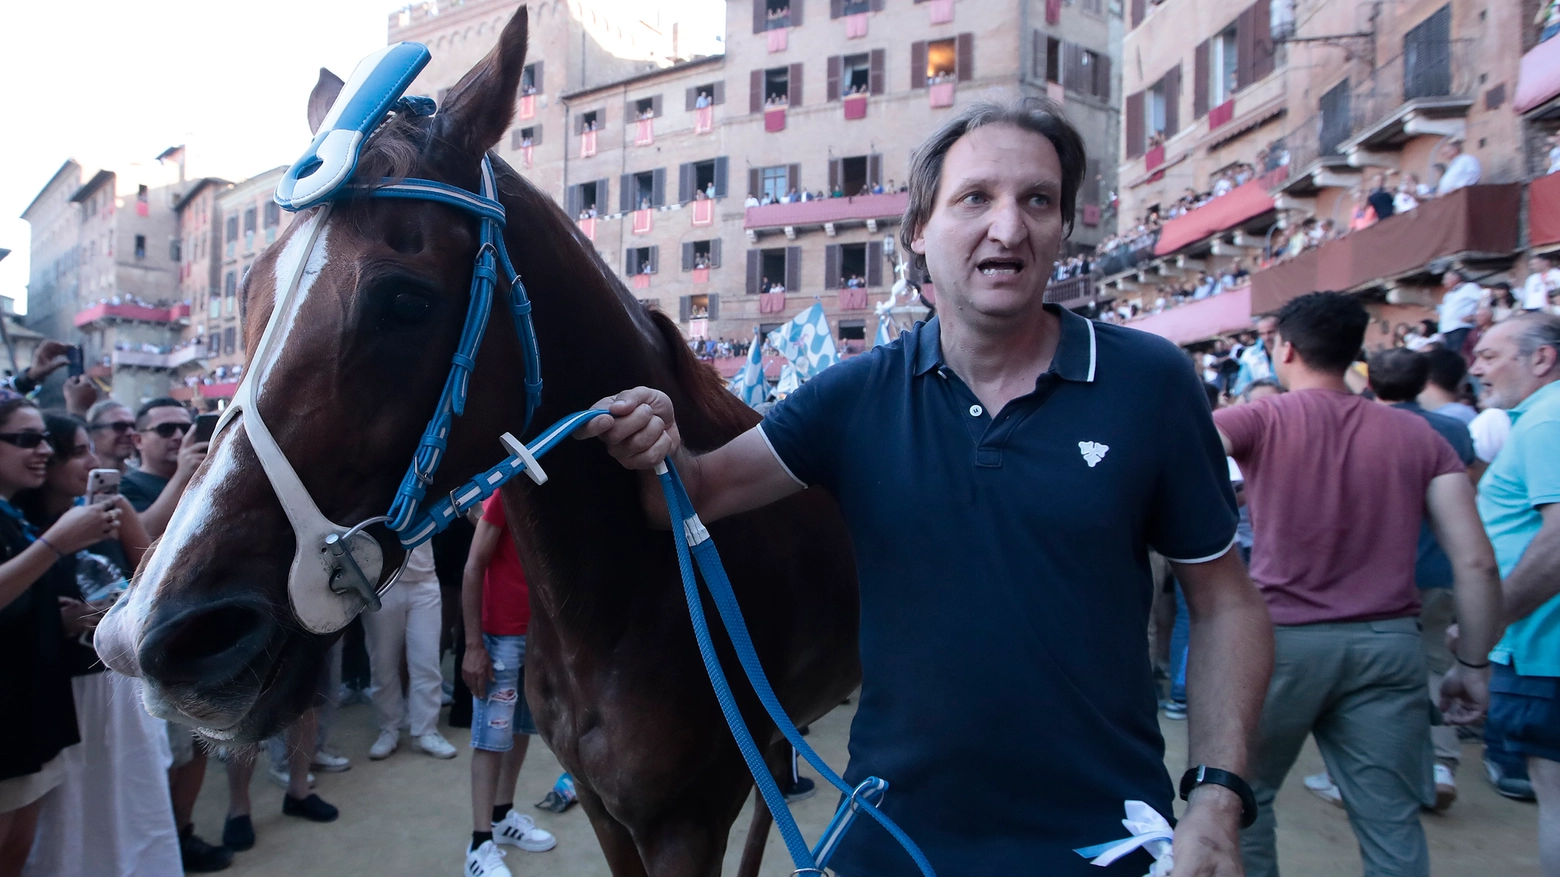 Tabacco, il cavallo dell'Onda che ha vinto il Palio di Provenzano (Foto Lazzeroni)